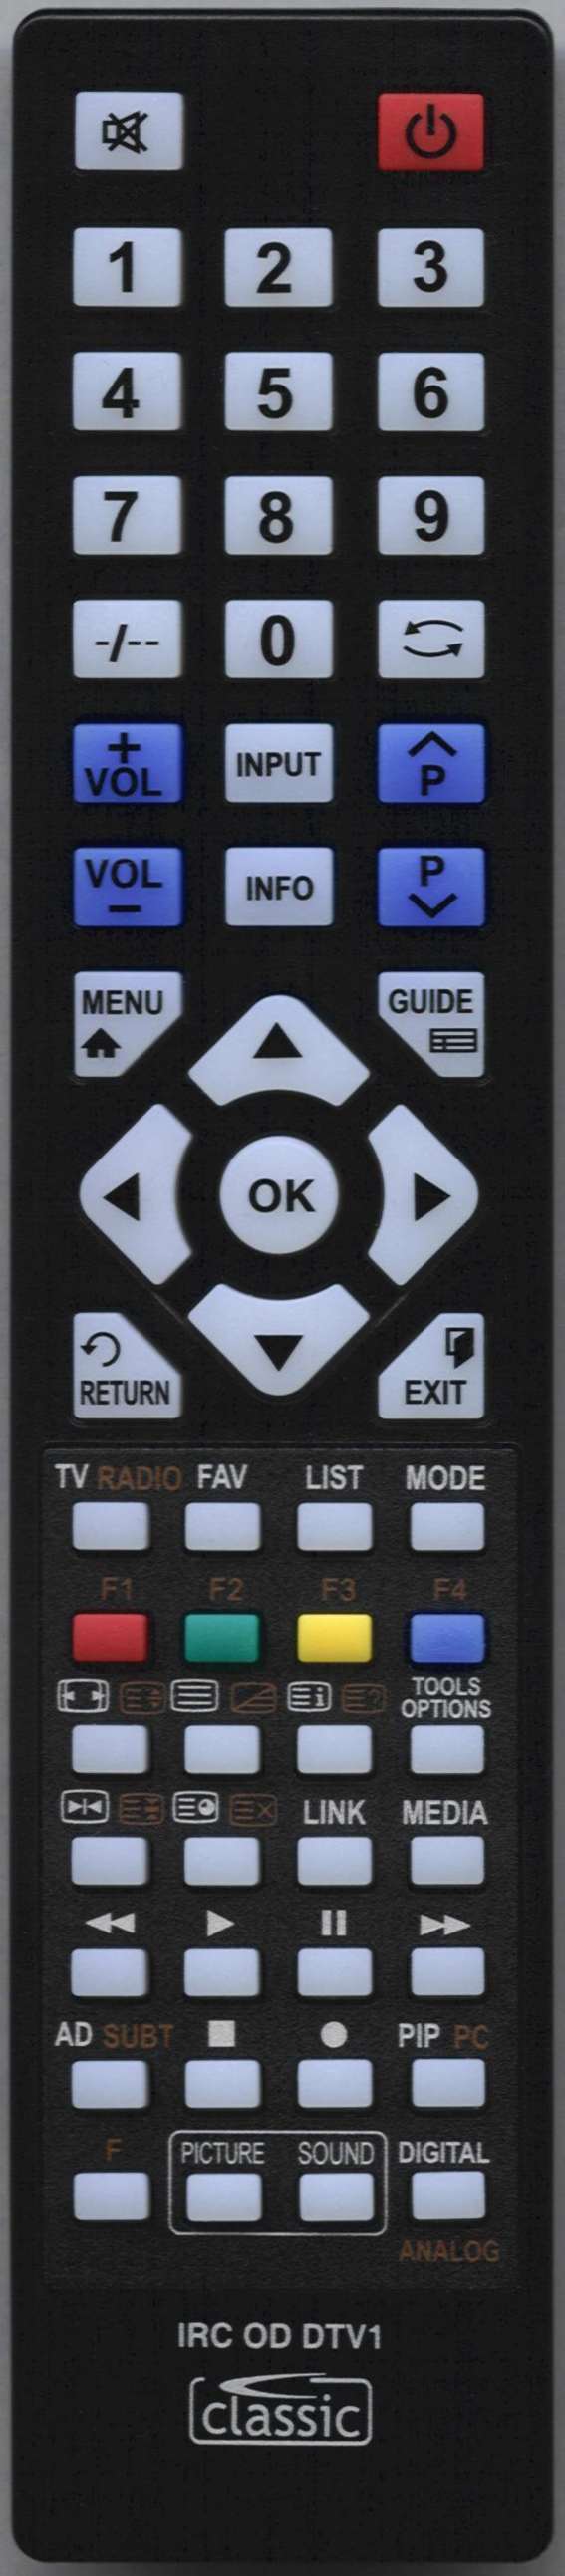 TECHNIKA LCD19-919 Remote Control Alternative